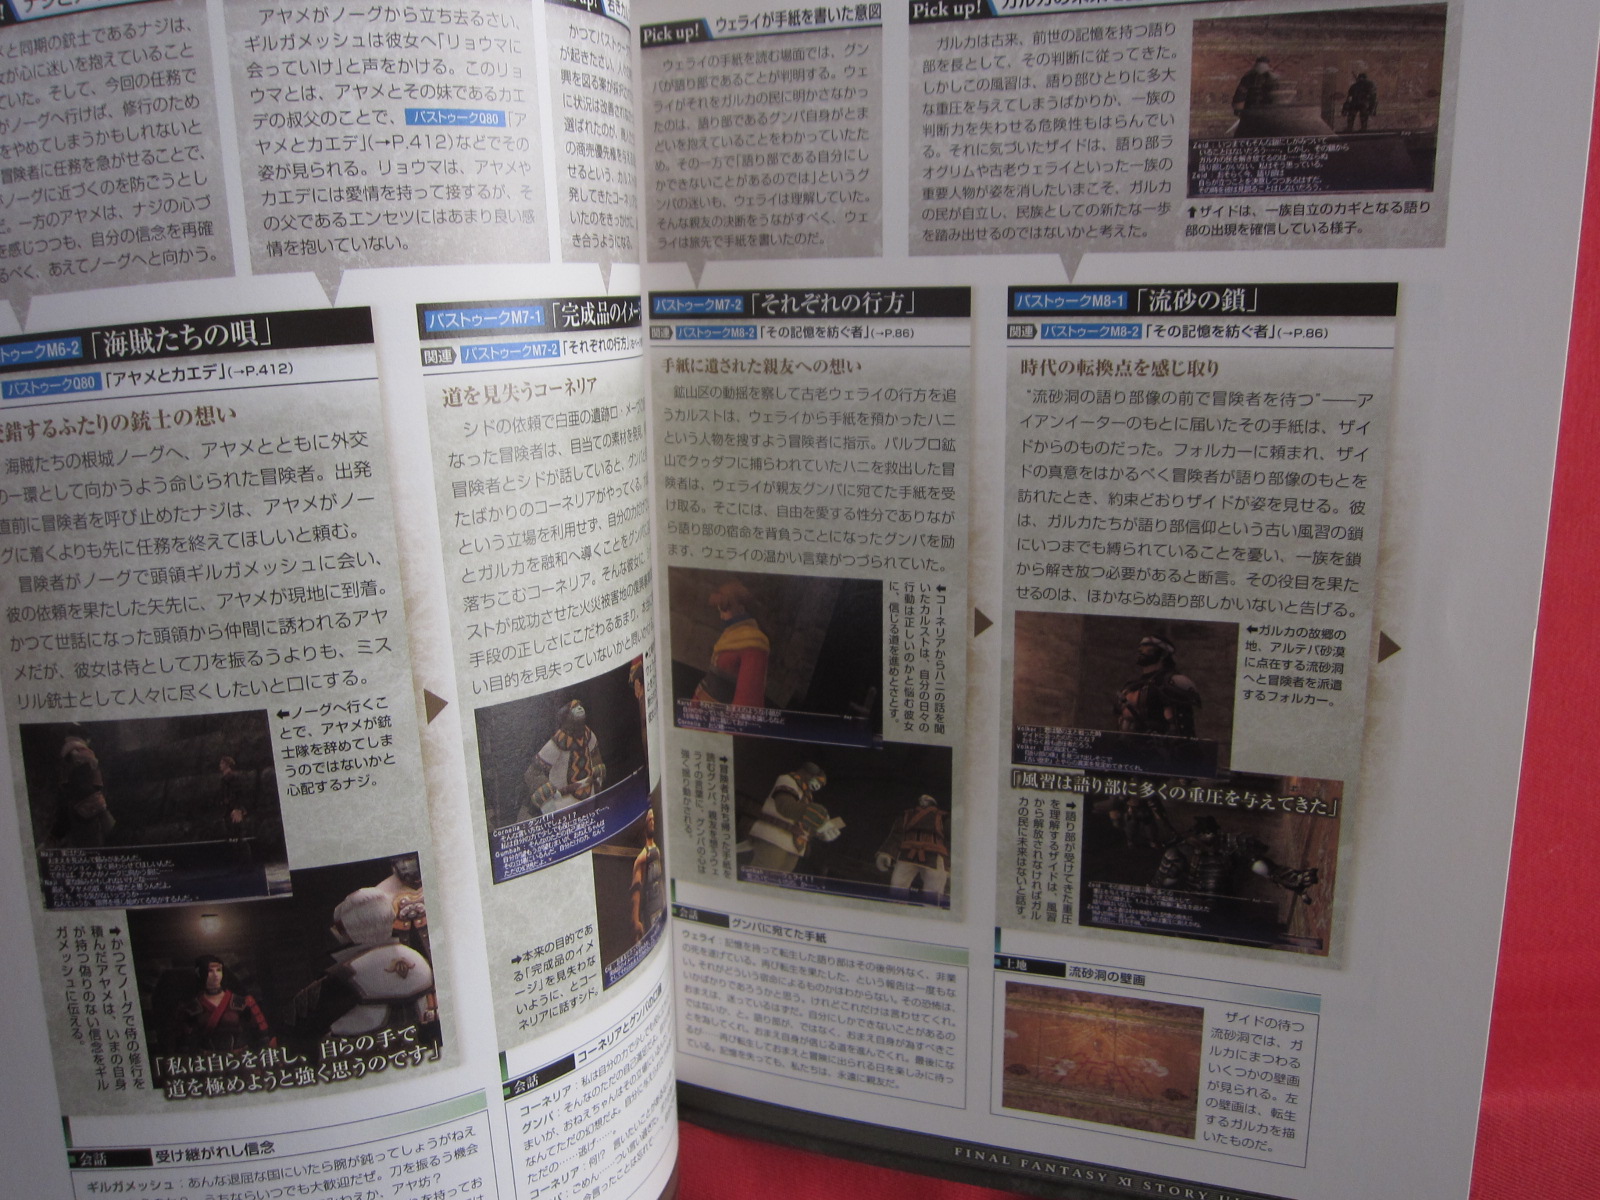 Guide Book JAPAN Final Fantasy XI Story Ultimania Ver.090409